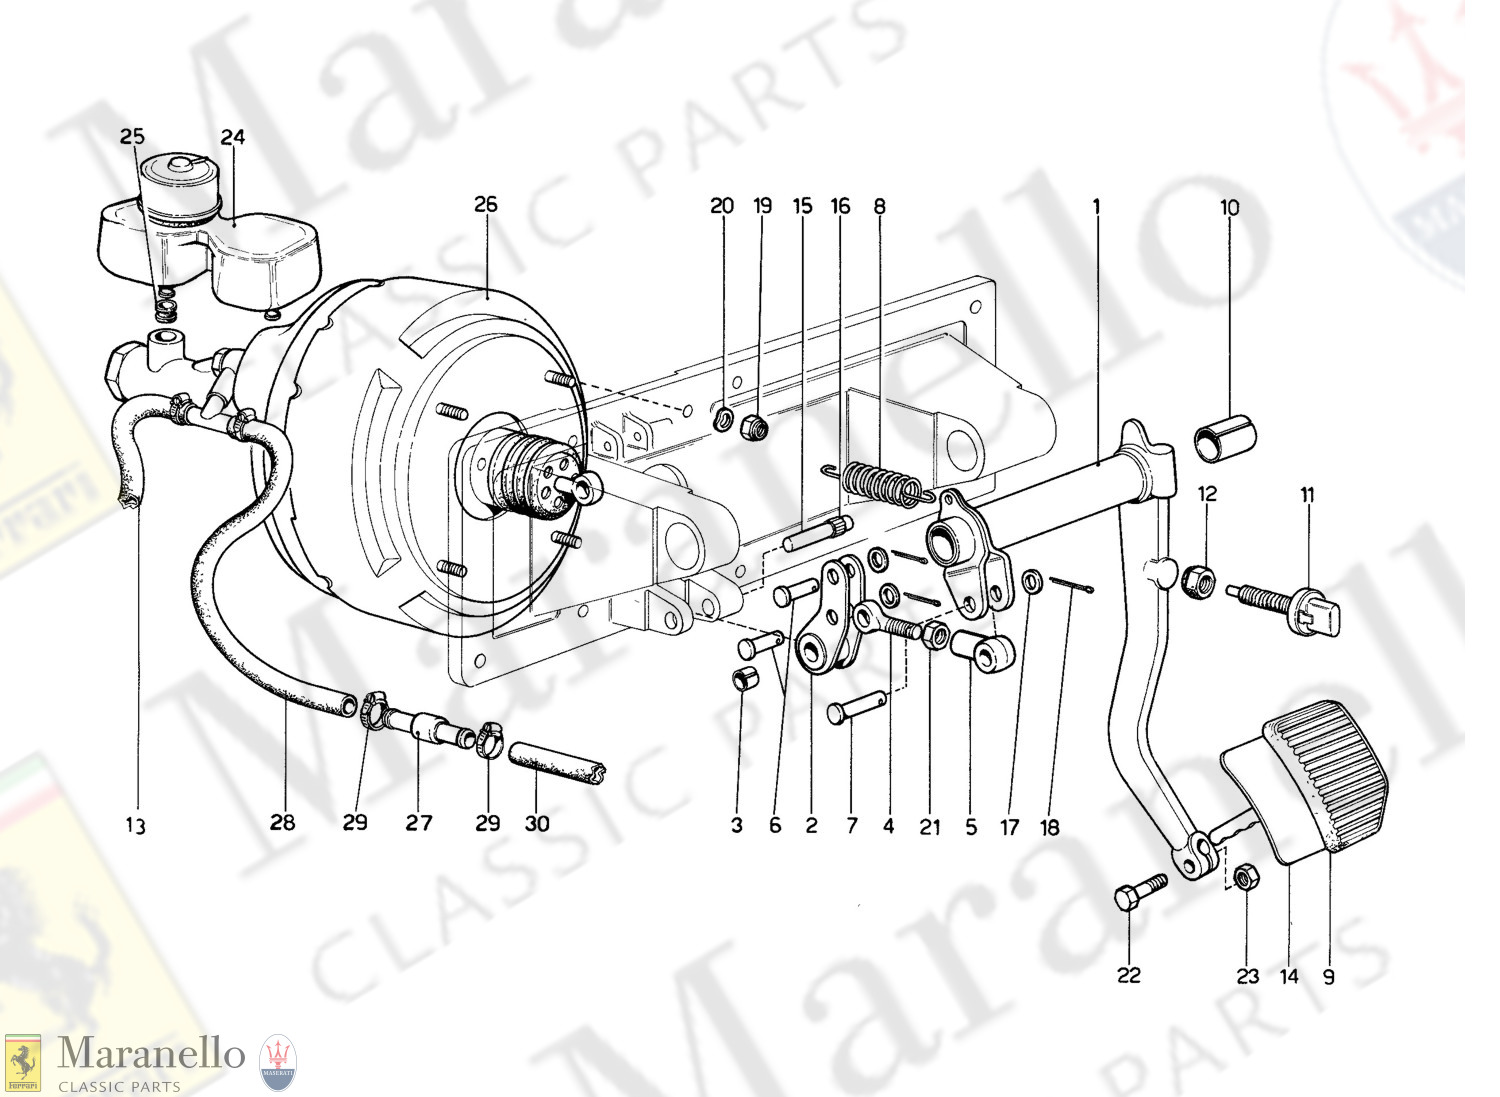 029 - Brake Hydraulic System